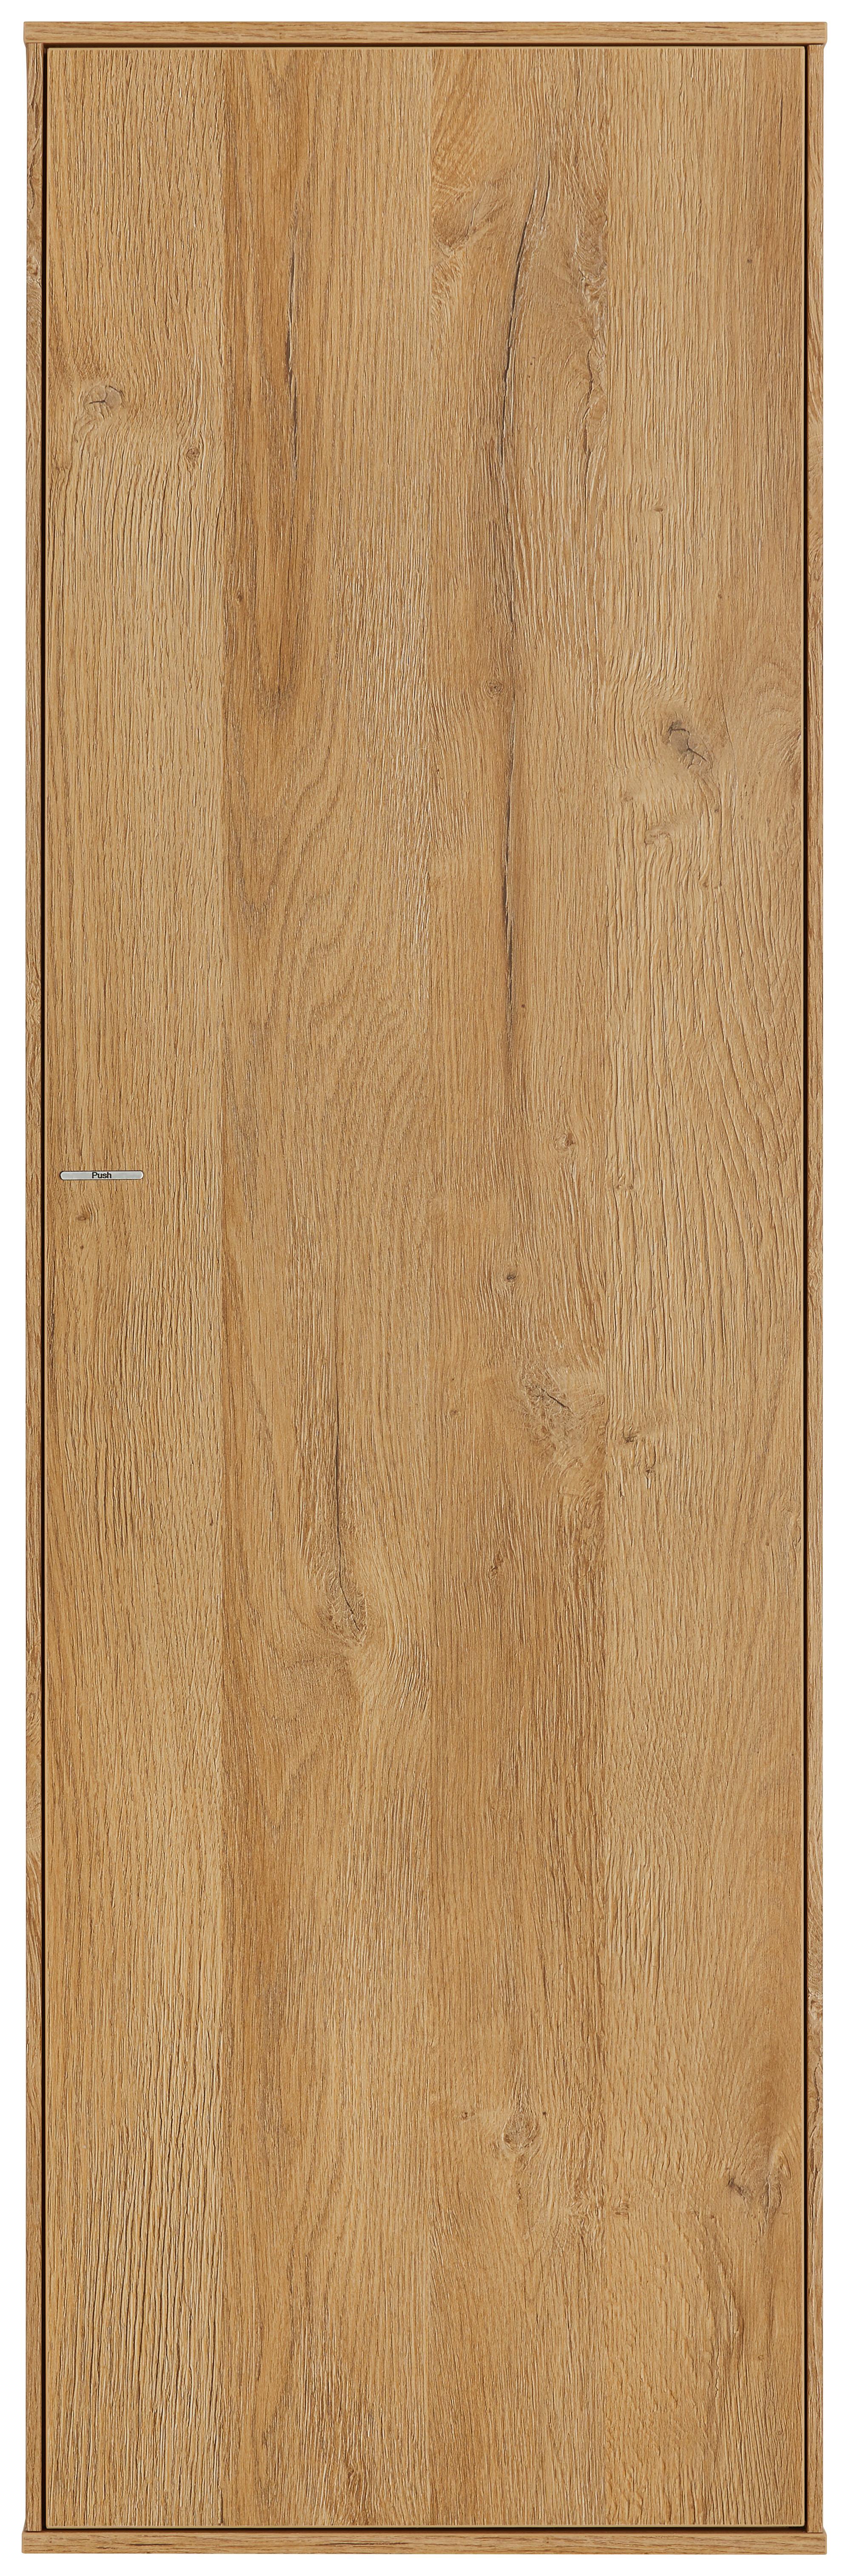 Závěsný Díl Max Box - barvy dubu, Moderní, kompozitní dřevo (38/120/32cm) - Premium Living